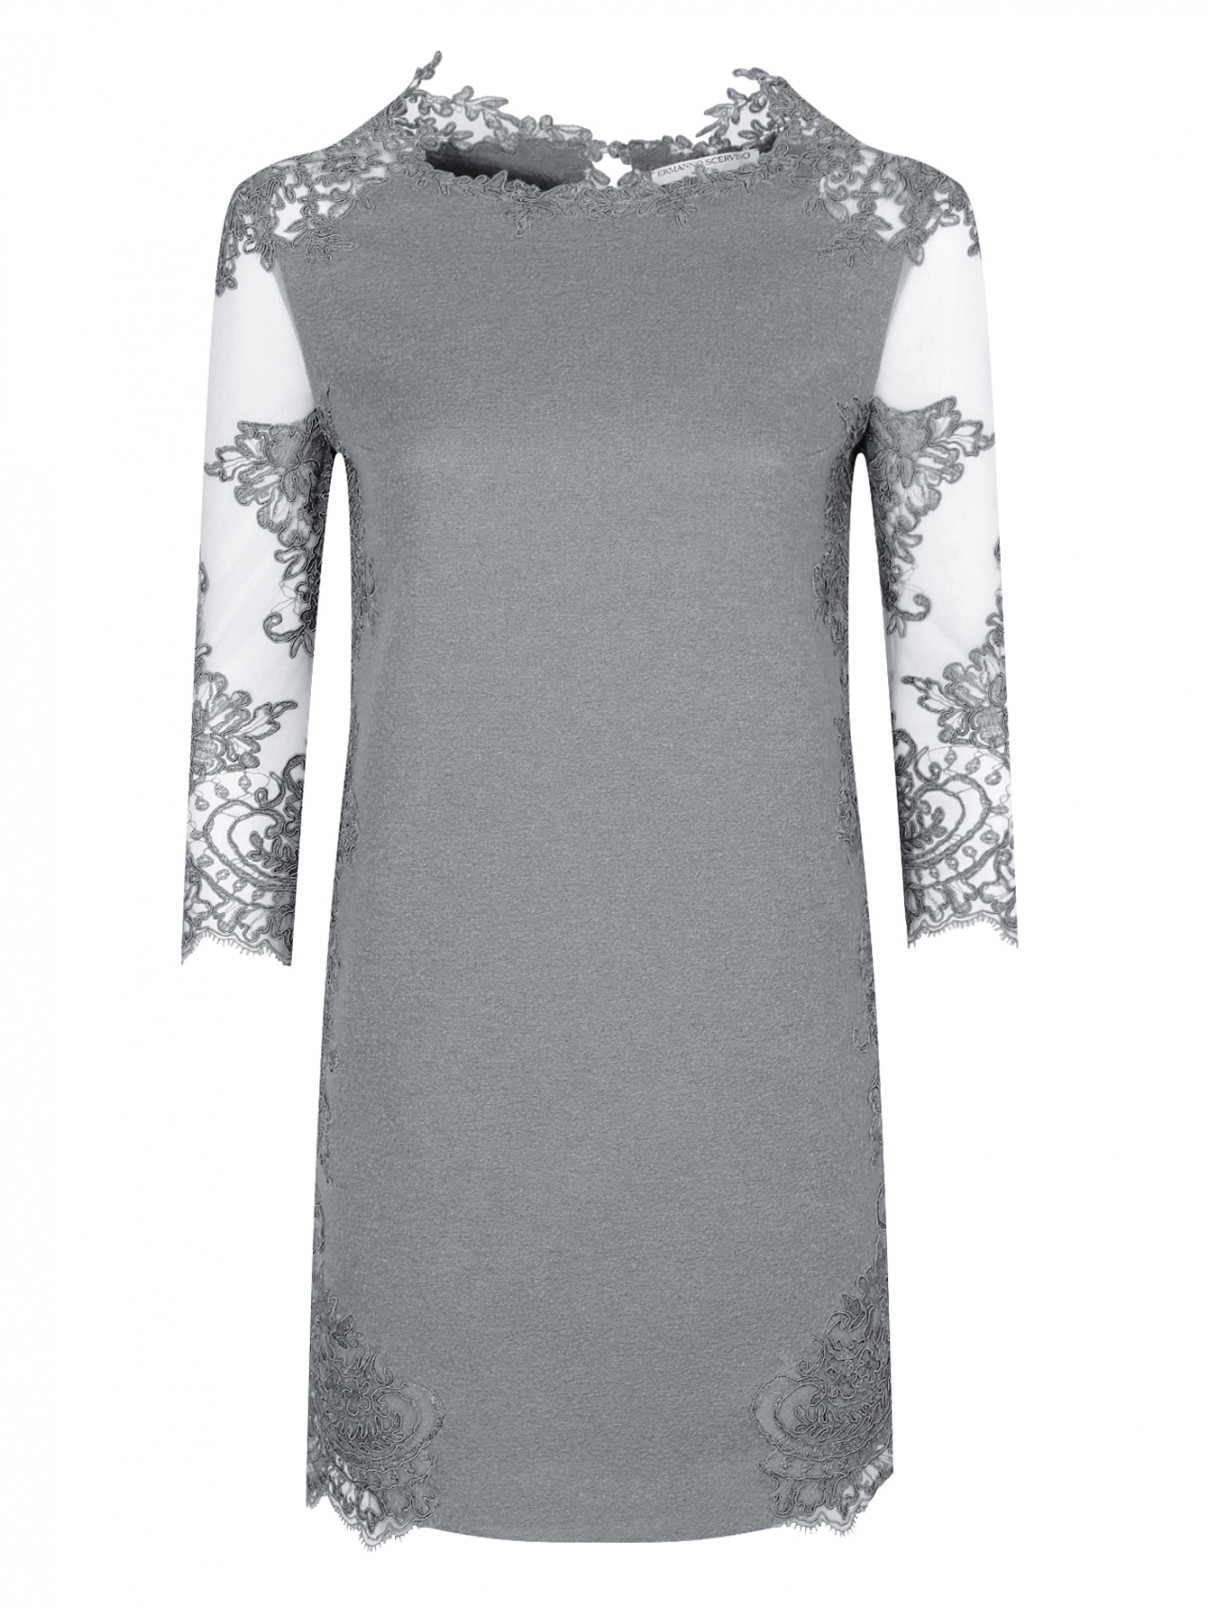 Платье из шерсти и шелка декорированное кружевом Ermanno Scervino  –  Общий вид  – Цвет:  Серый